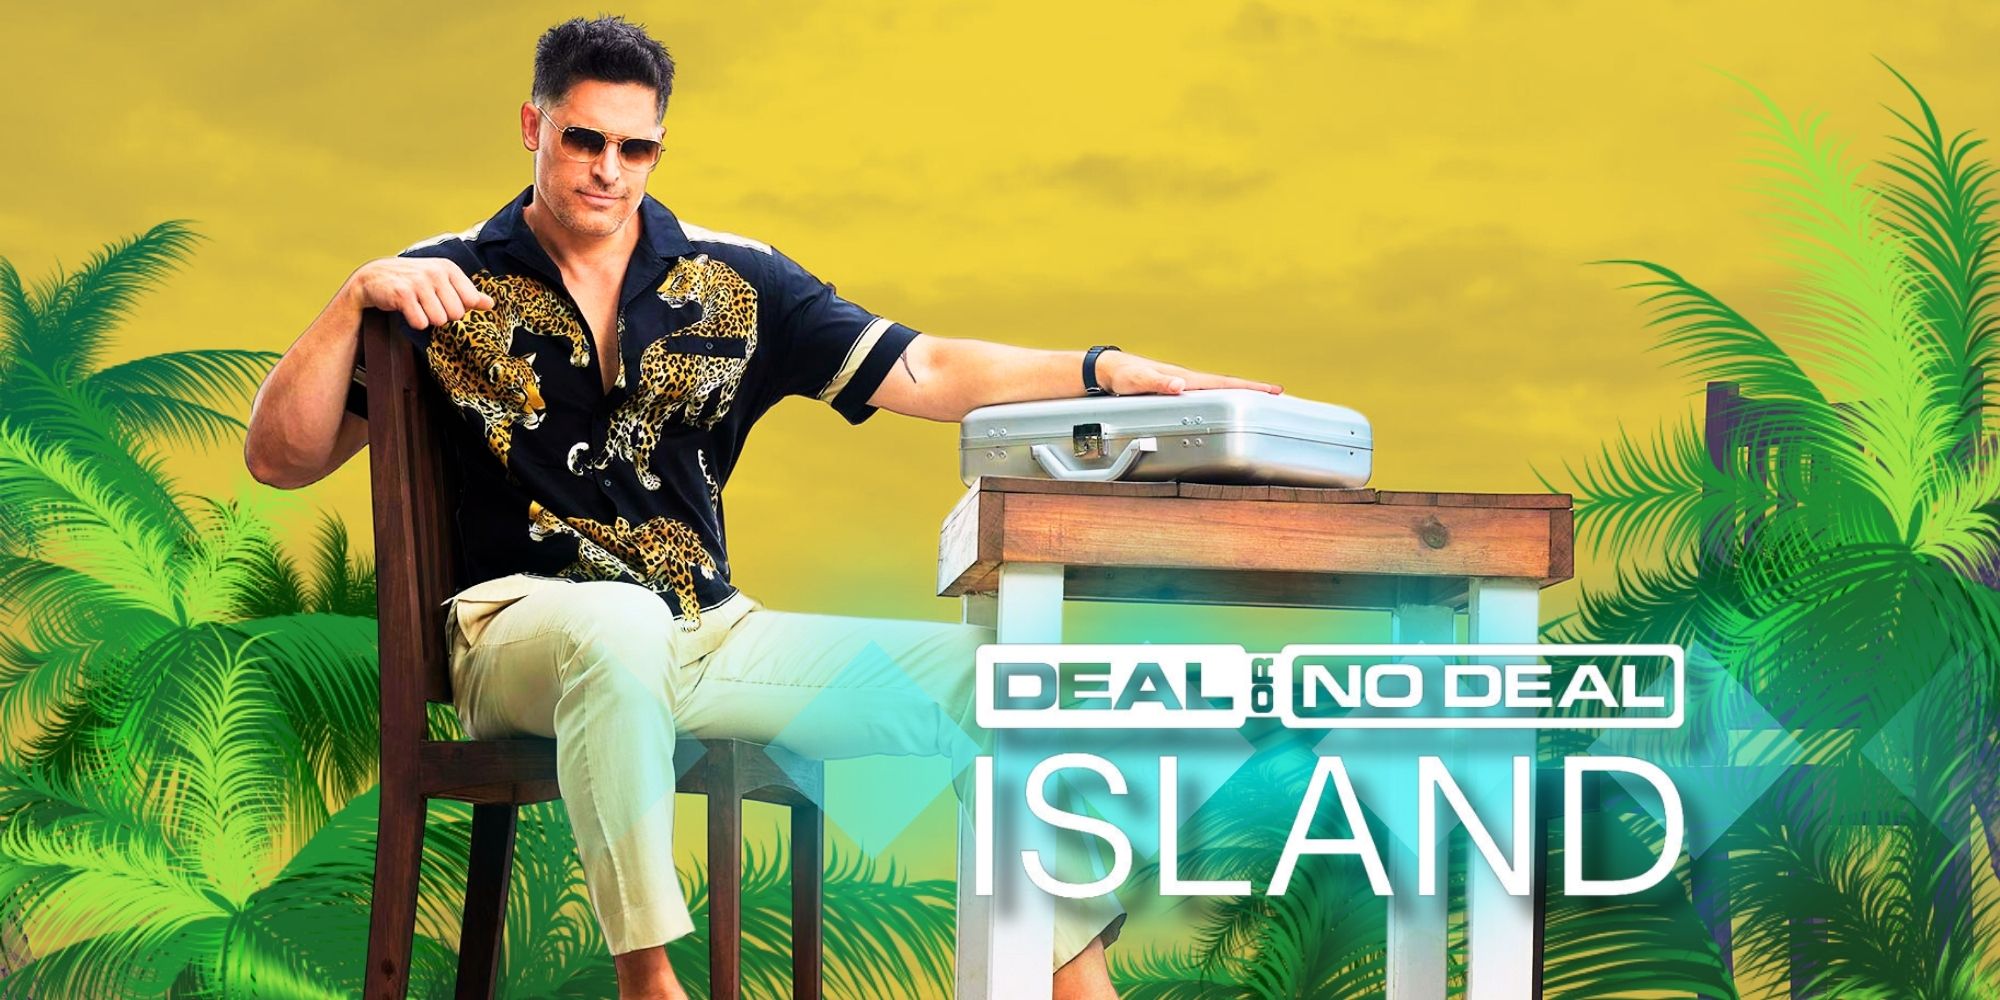 Deal or No Deal Island Temporada 1: noticias, fecha de lanzamiento, reparto, tráiler y todo lo que sabemos